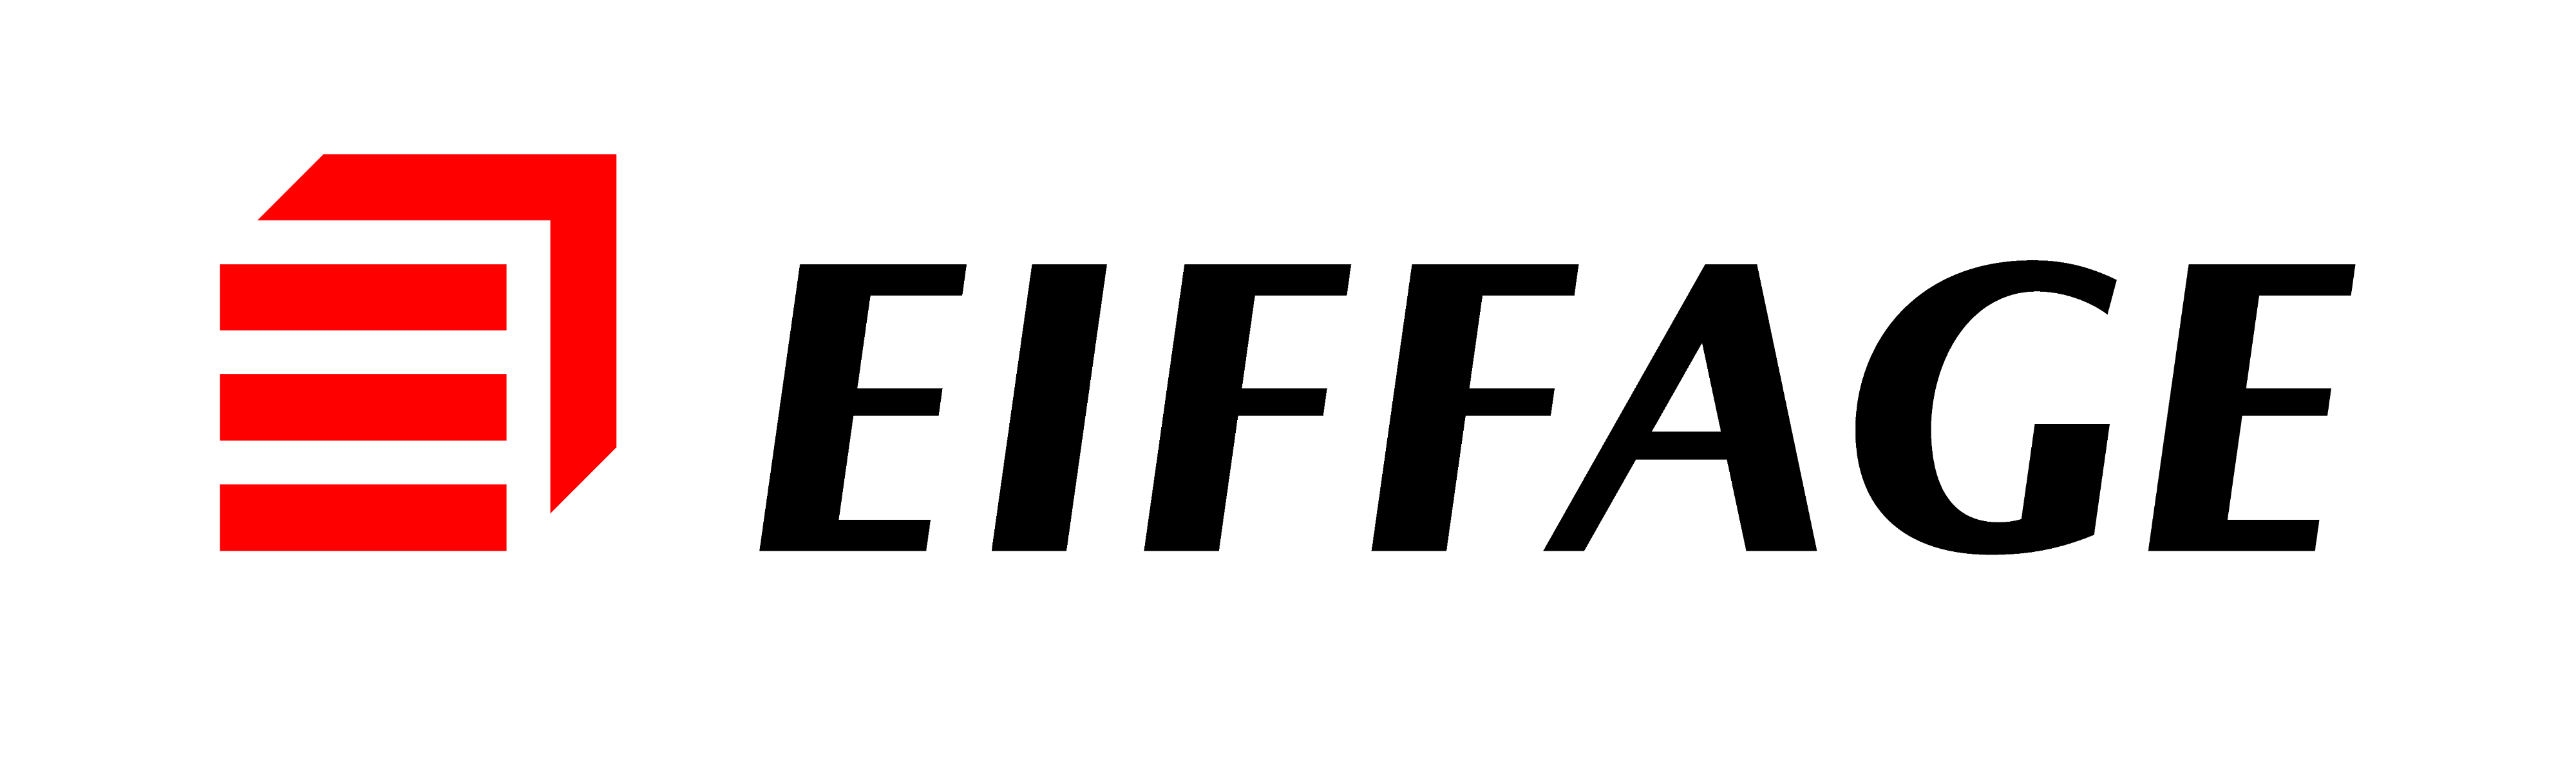 Eiffage Logo - Eiffage Logo